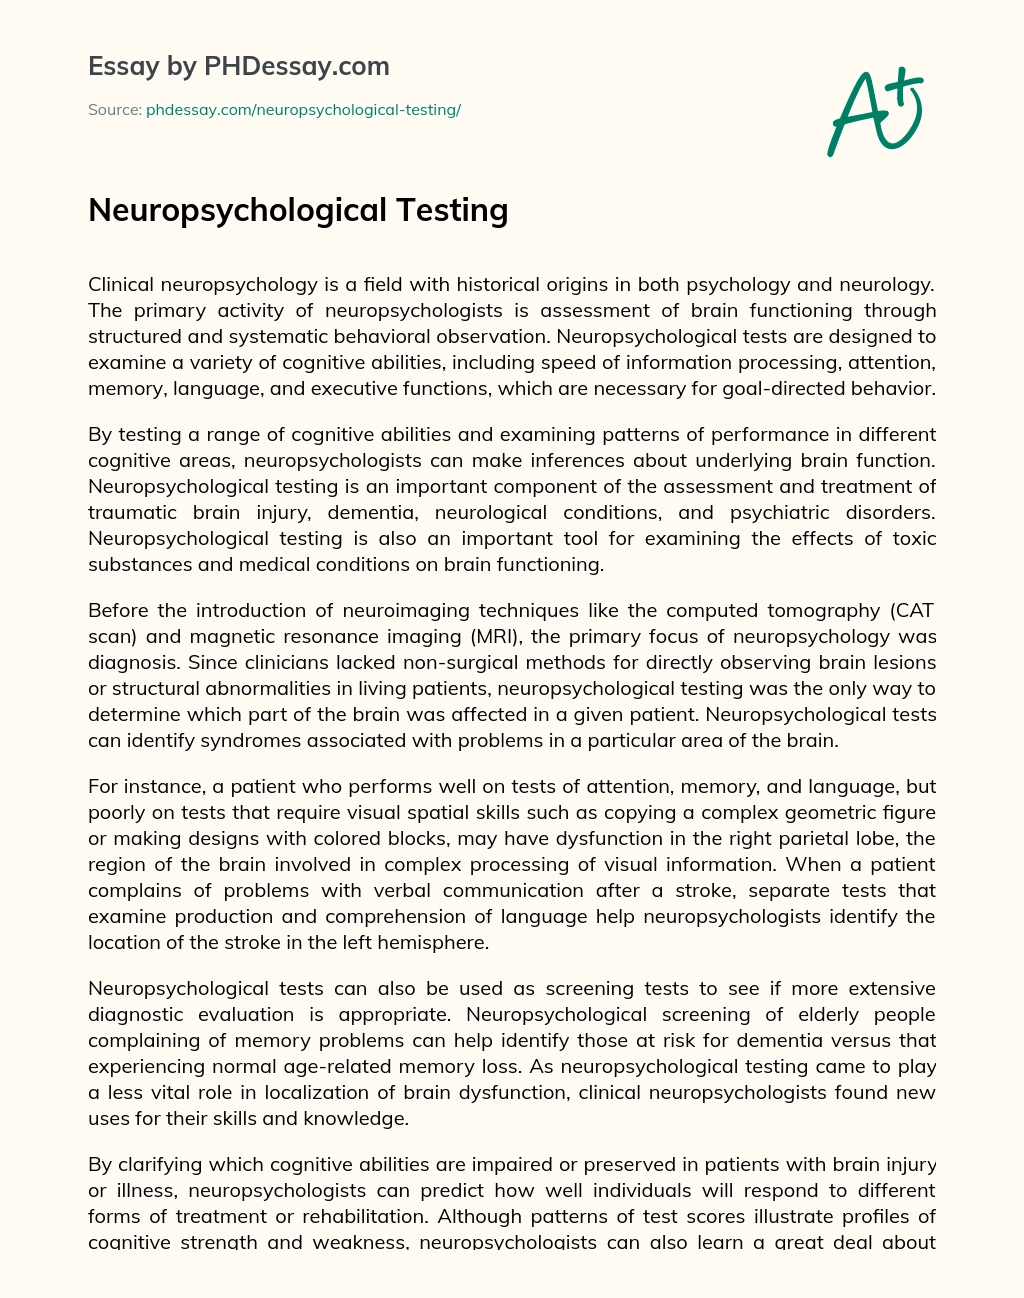 Neuropsychological Testing essay